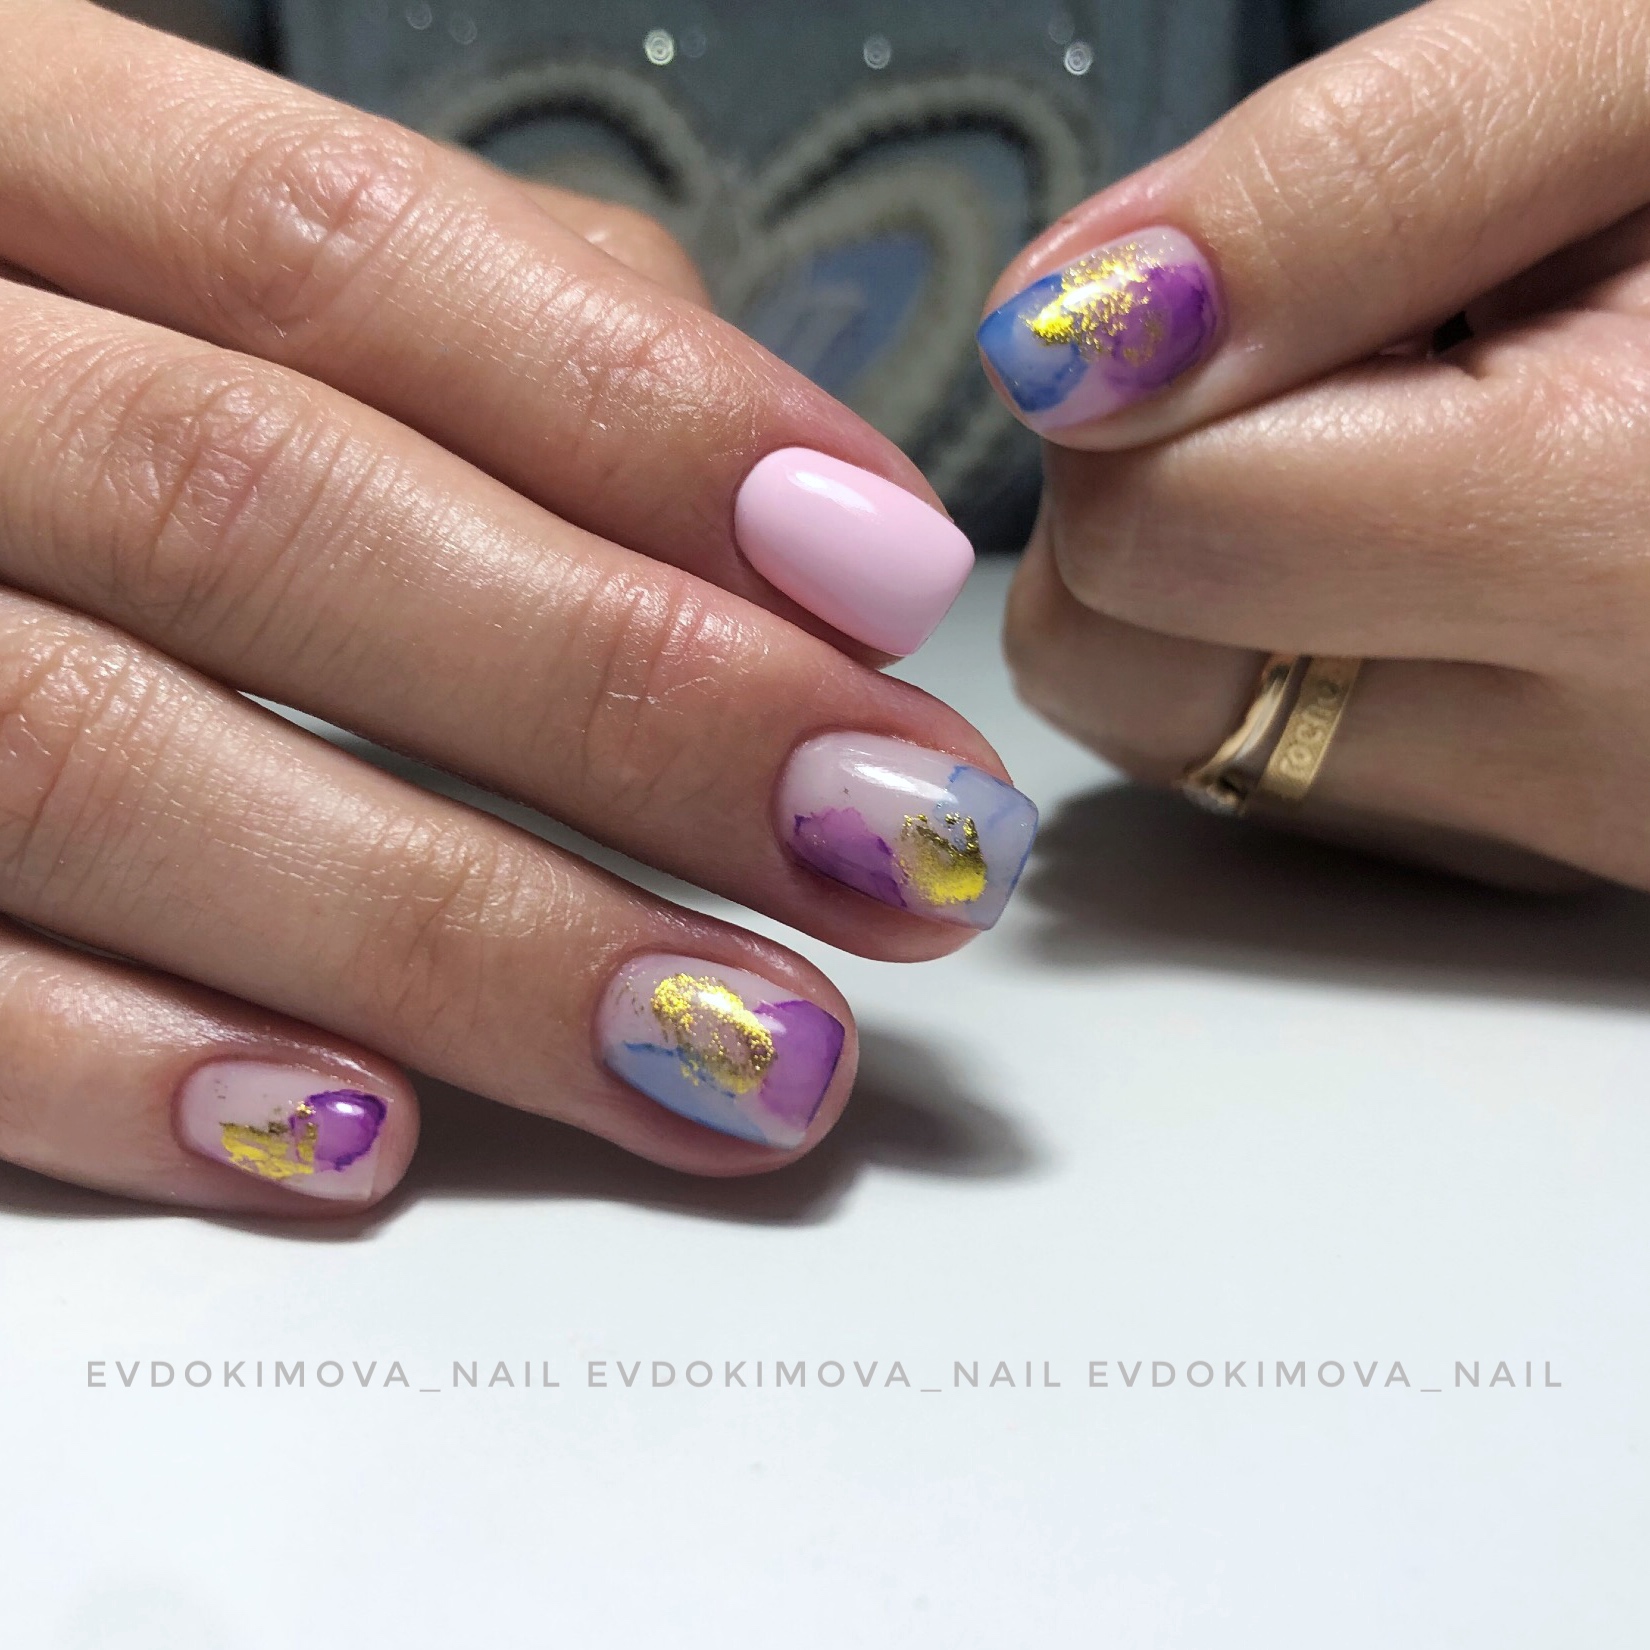 Маникюр с абстрактным рисунком и золотой фольгой в розовом цвете на короткие ногти.